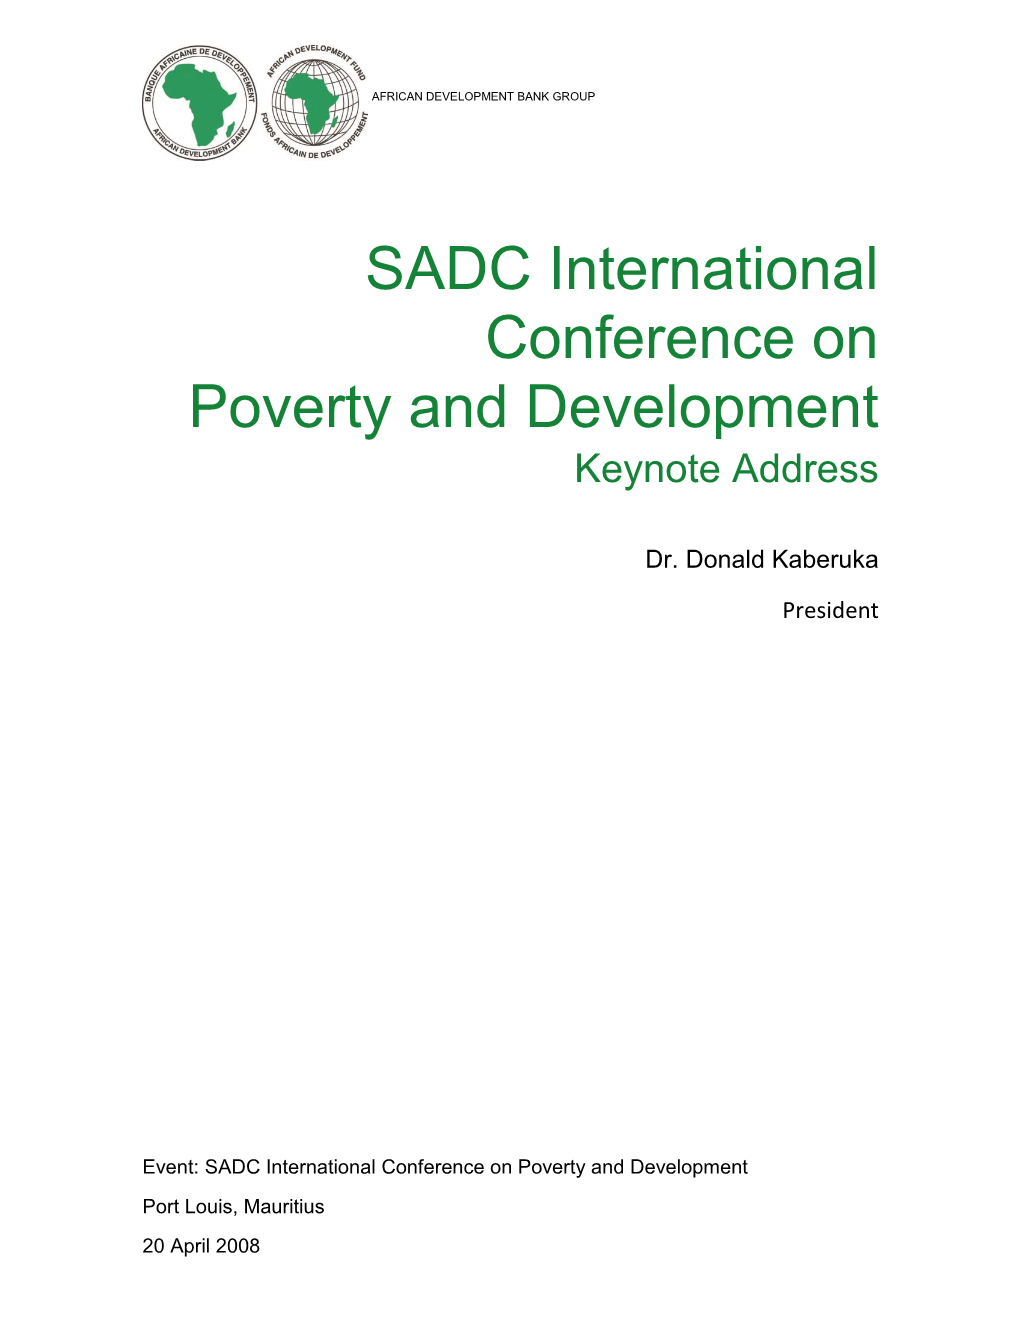 SADC International Conference on Poverty and Development Keynote Address